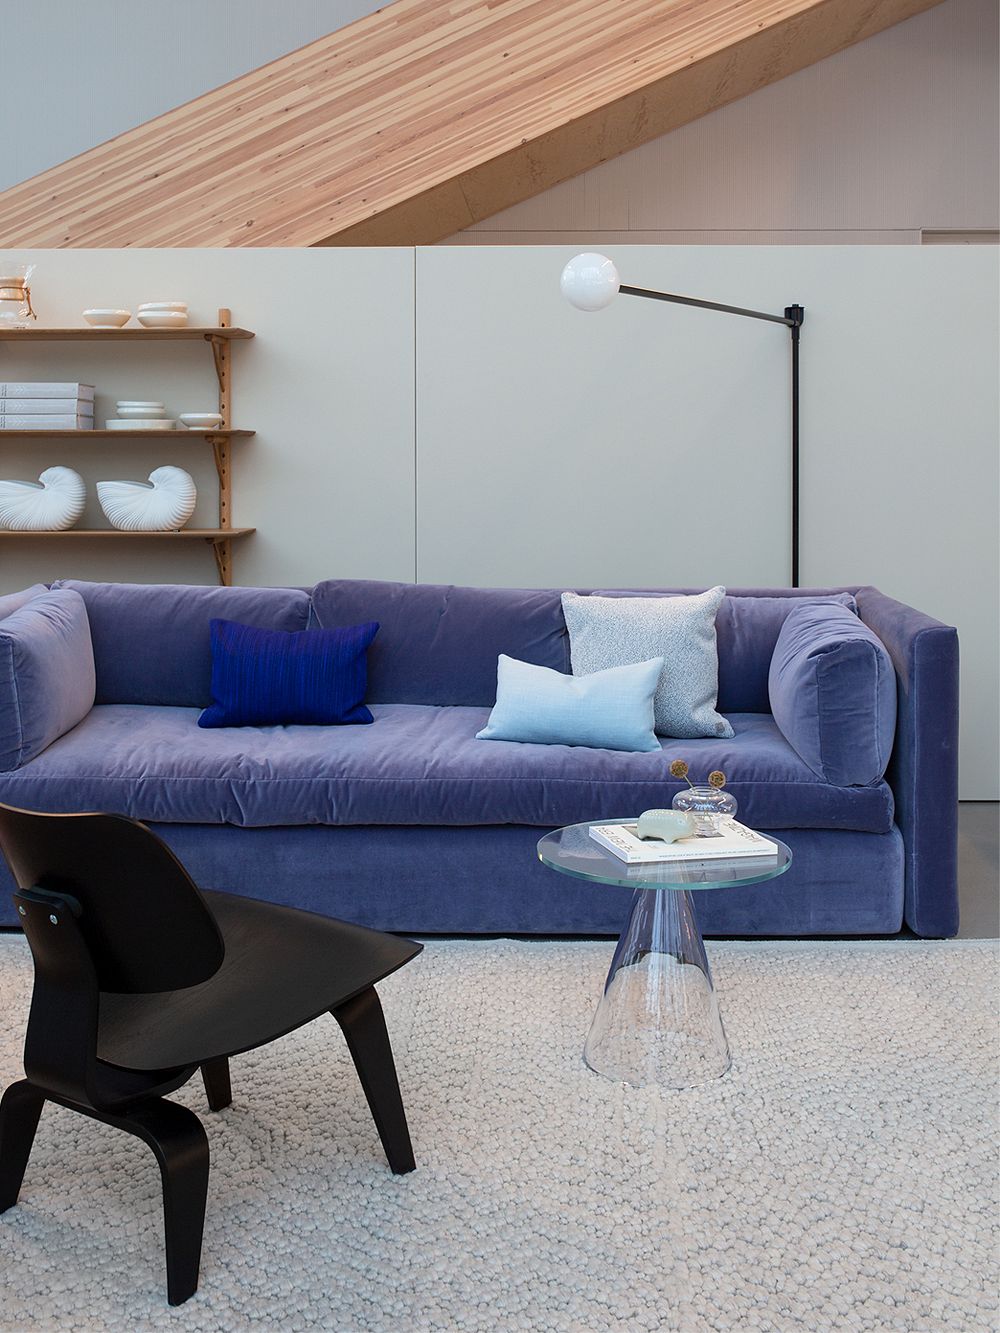 Hay's Hackney sofa in Finnish Design Shop's showroom